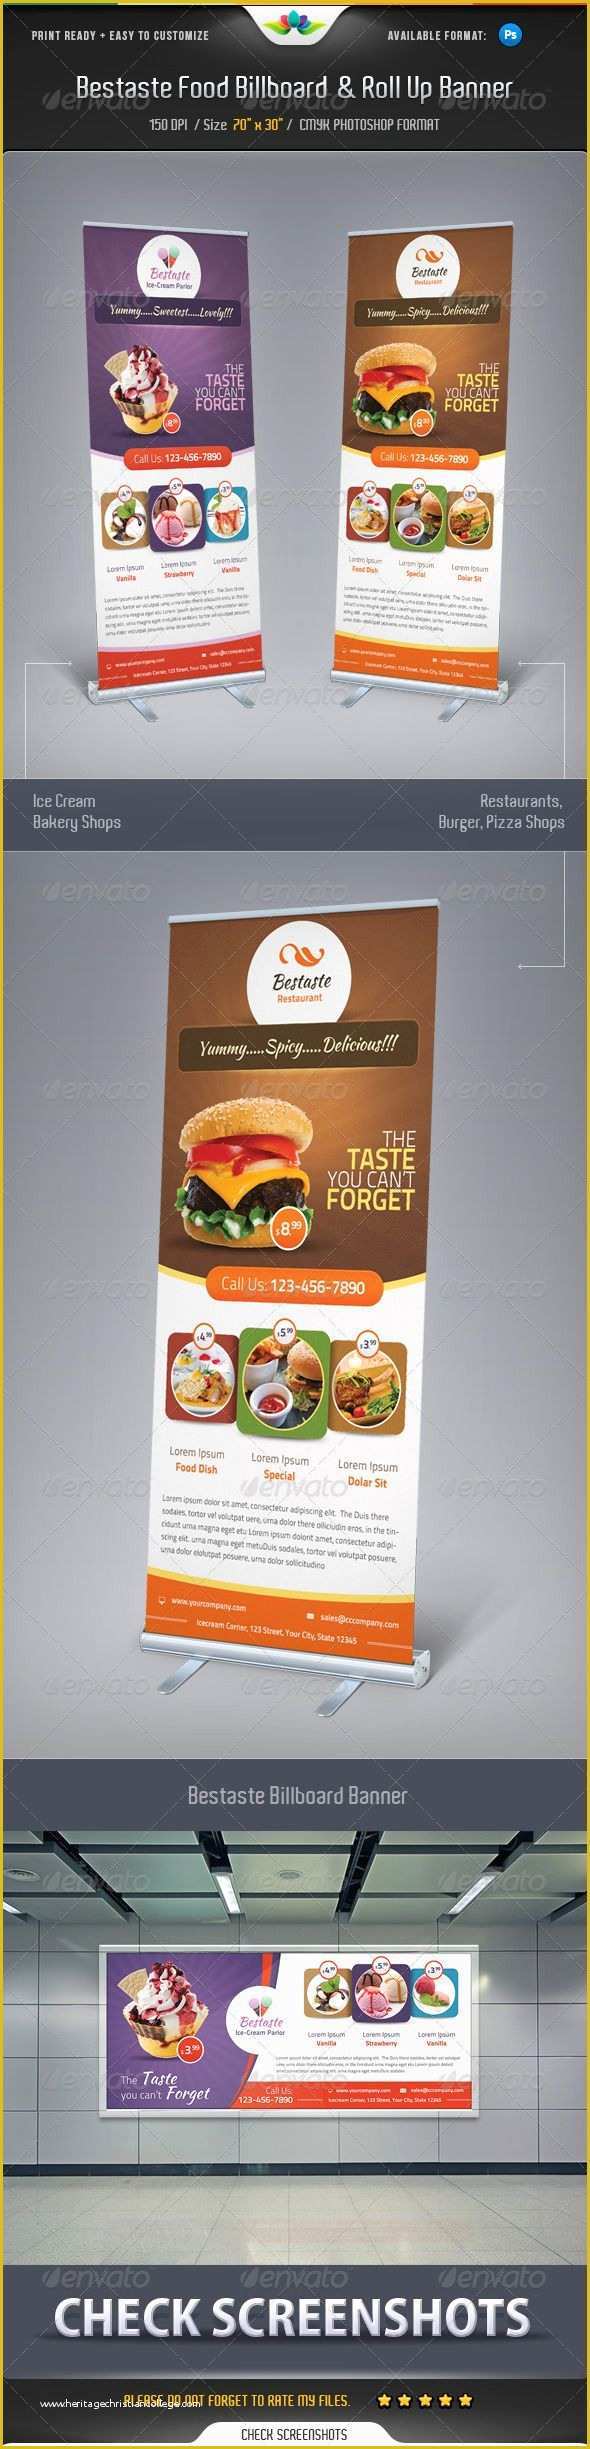 Food Banner Design Template Free Of Bestaste Food Billboard & Roll Up Banner